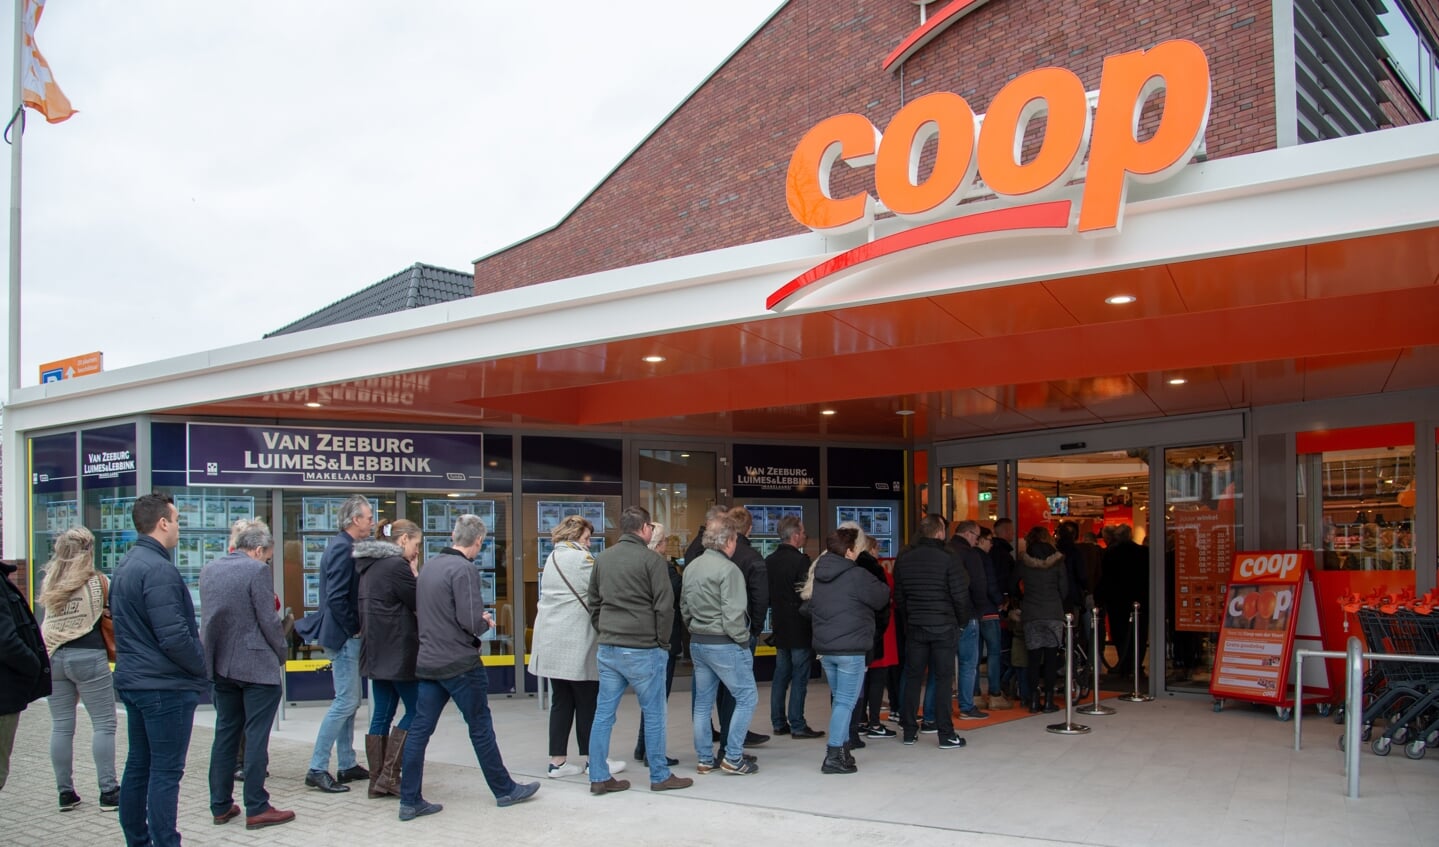 Zondagmiddag werd de nieuwe vestiging van de Coop supermarkt aan de Zutphenseweg tijdens een speciale openingsreceptie voor genodigden geopend. Foto: Coen Heveling Fotografie 